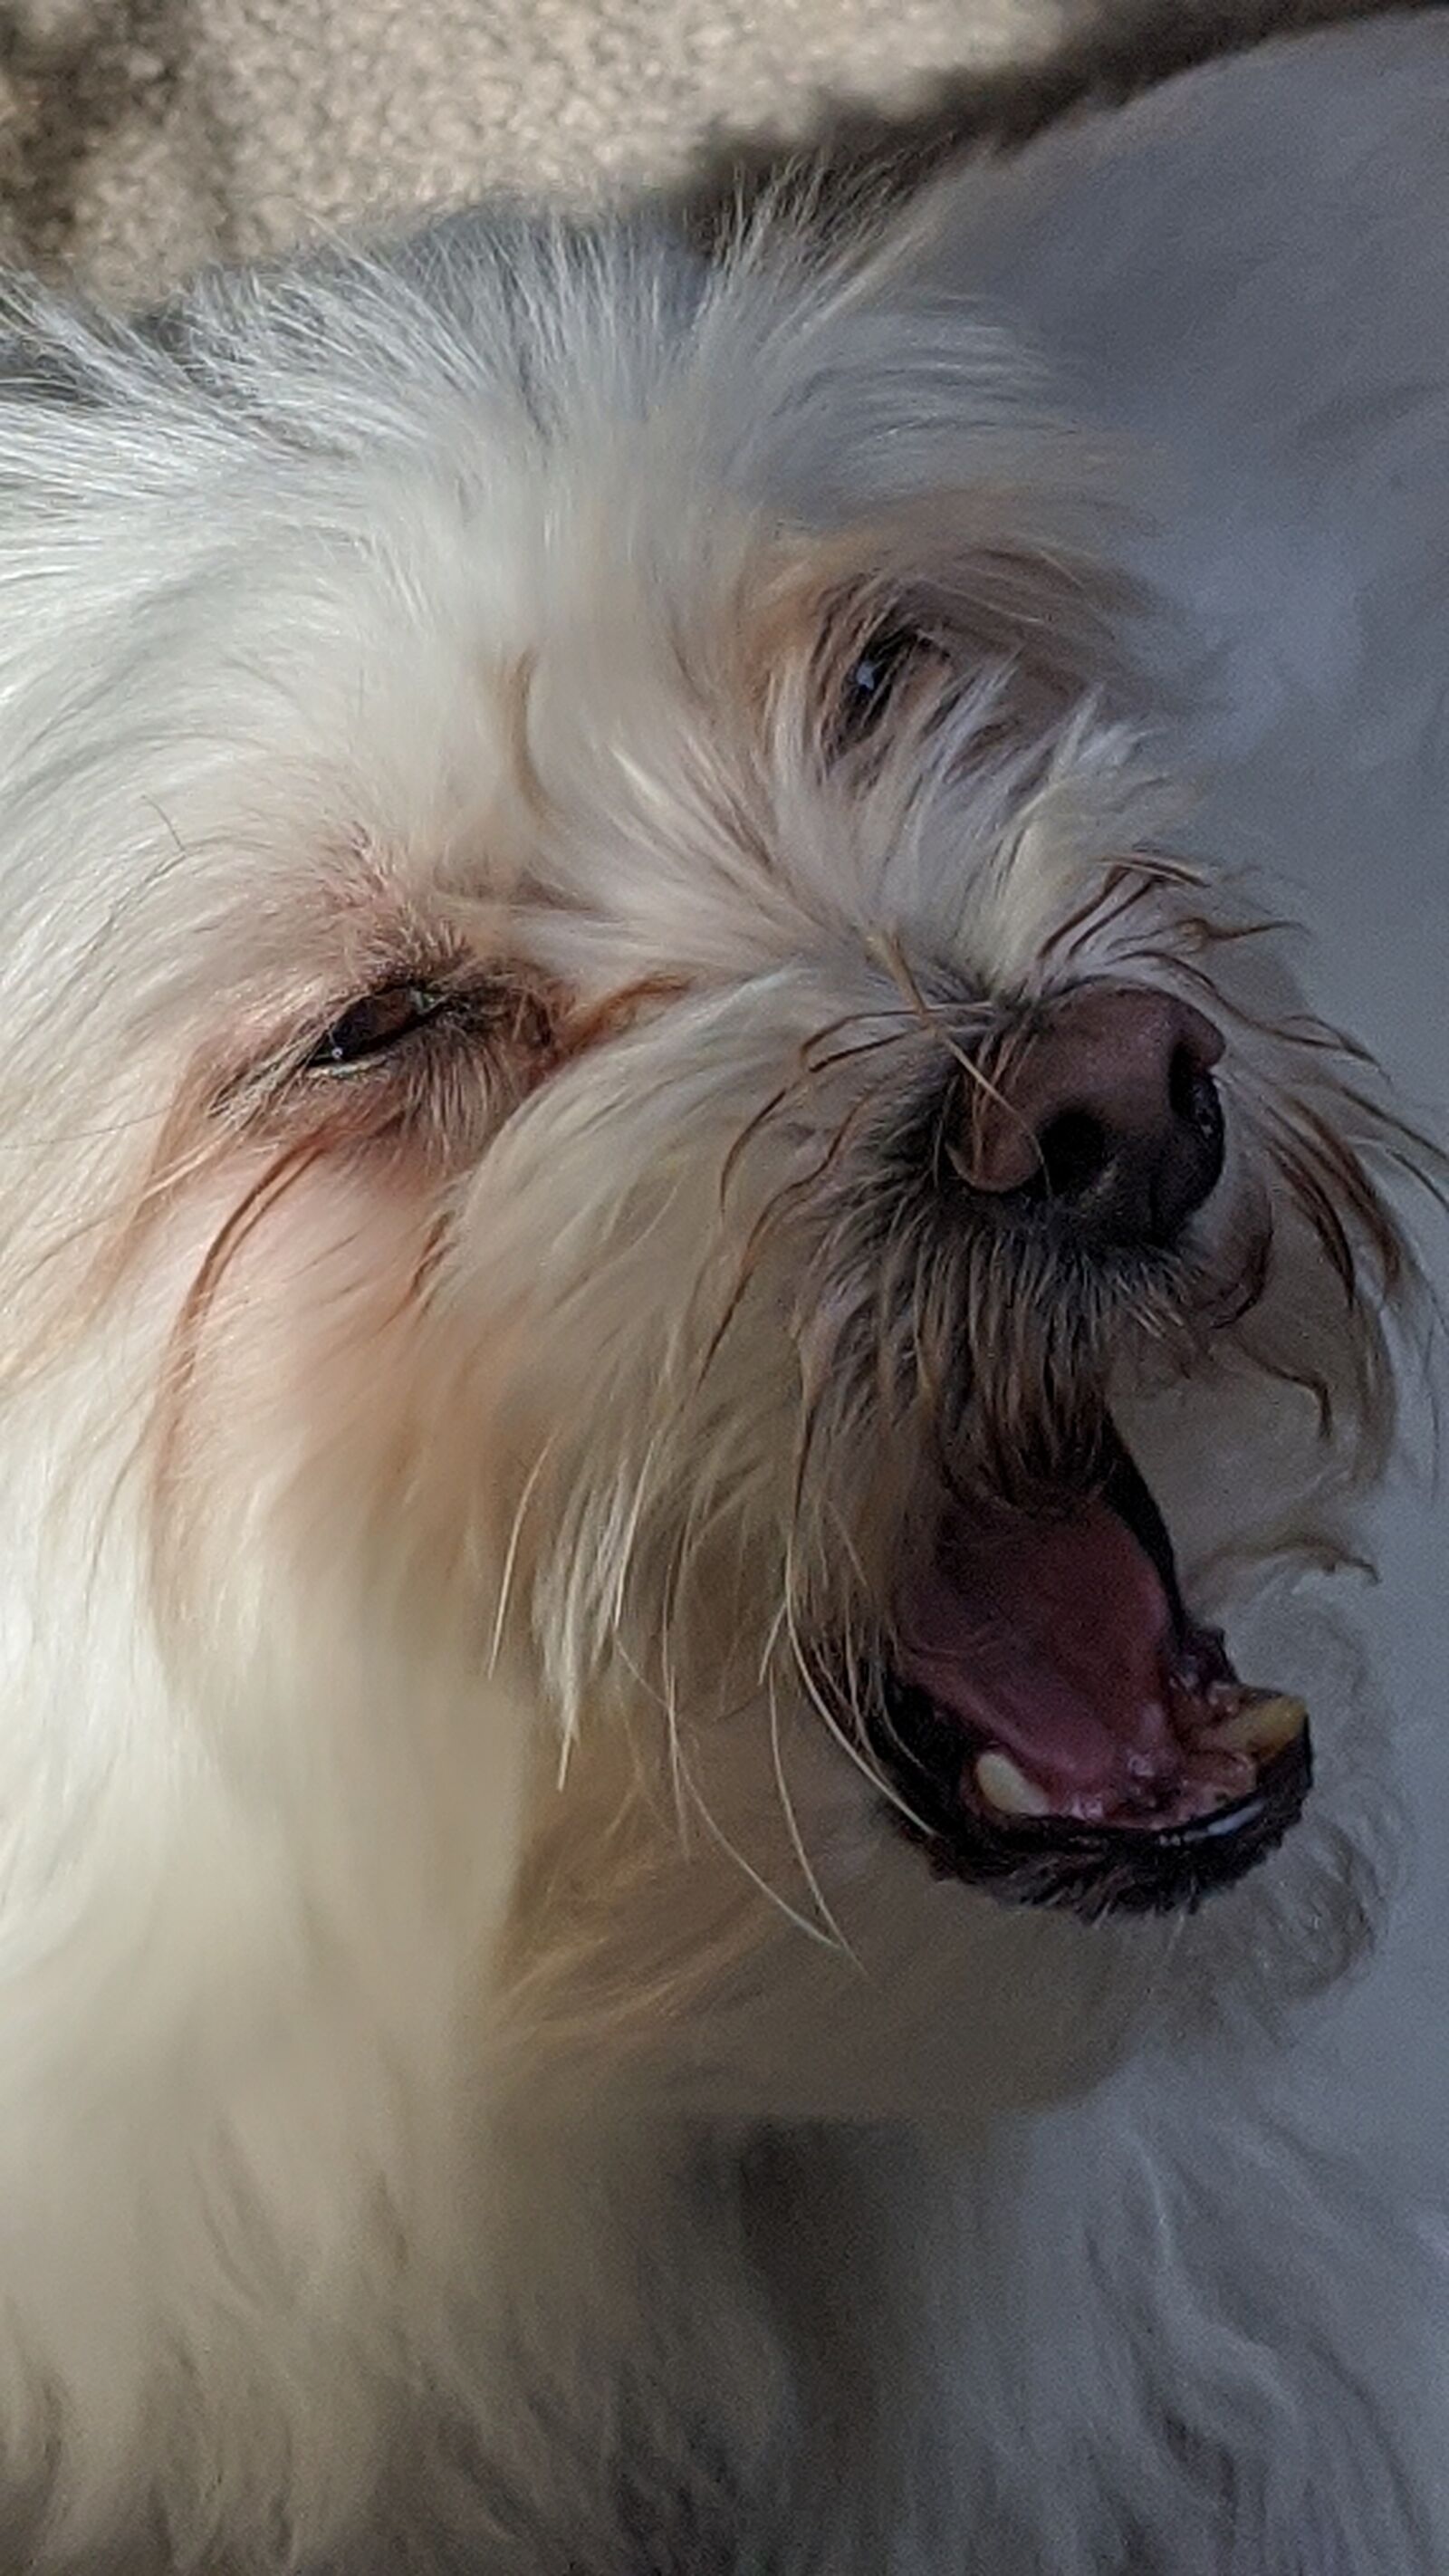 Google Pixel 4 XL sample photo. White dog, mad dog photography